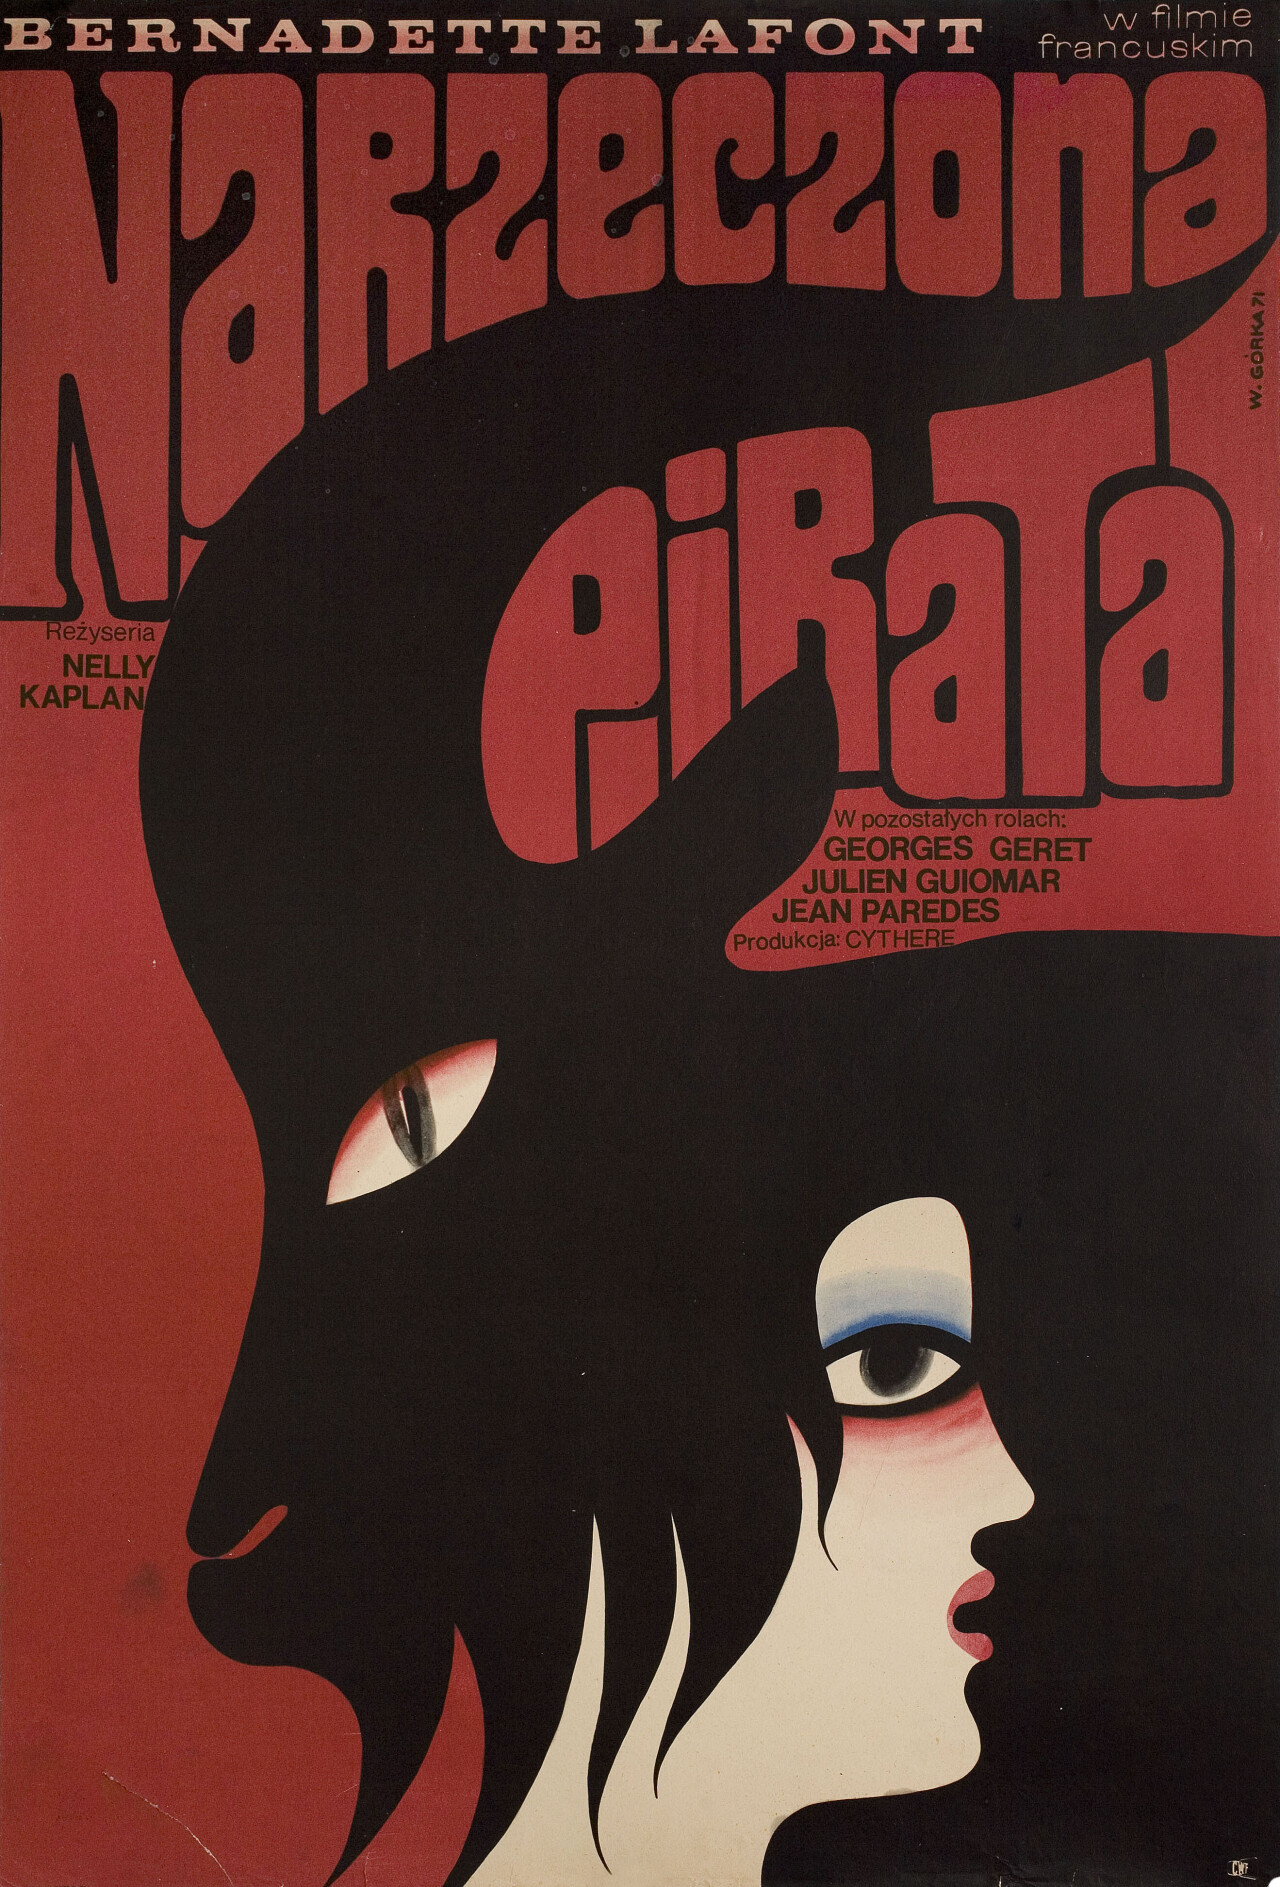 Очень любопытная девушка (A Very Curious Girl, 1969), режиссёр Нелли Каплан, польский постер к фильму, автор Виктор Горка (графический дизайн, 1971 год)